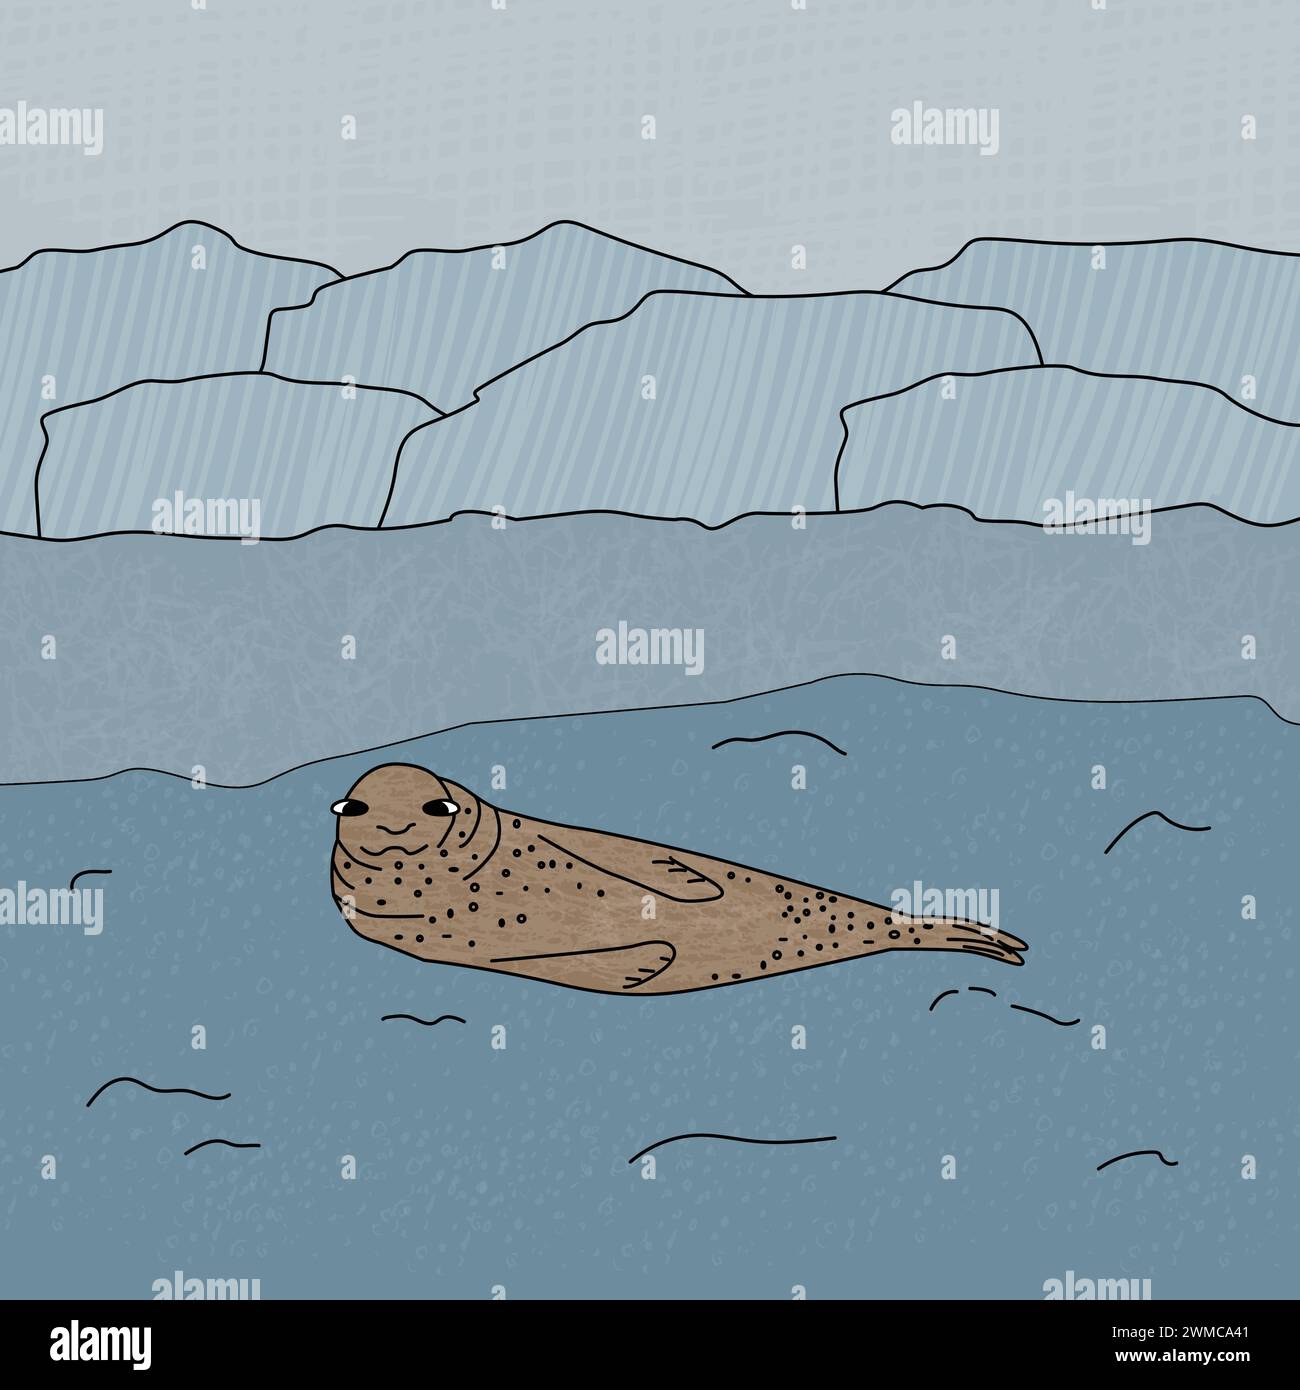 Phoque léopard. Illustration de dessin animé dessinée à la main de vecteur d'animal arctique en Antarctique. Illustration texturée polaire avec fond Illustration de Vecteur